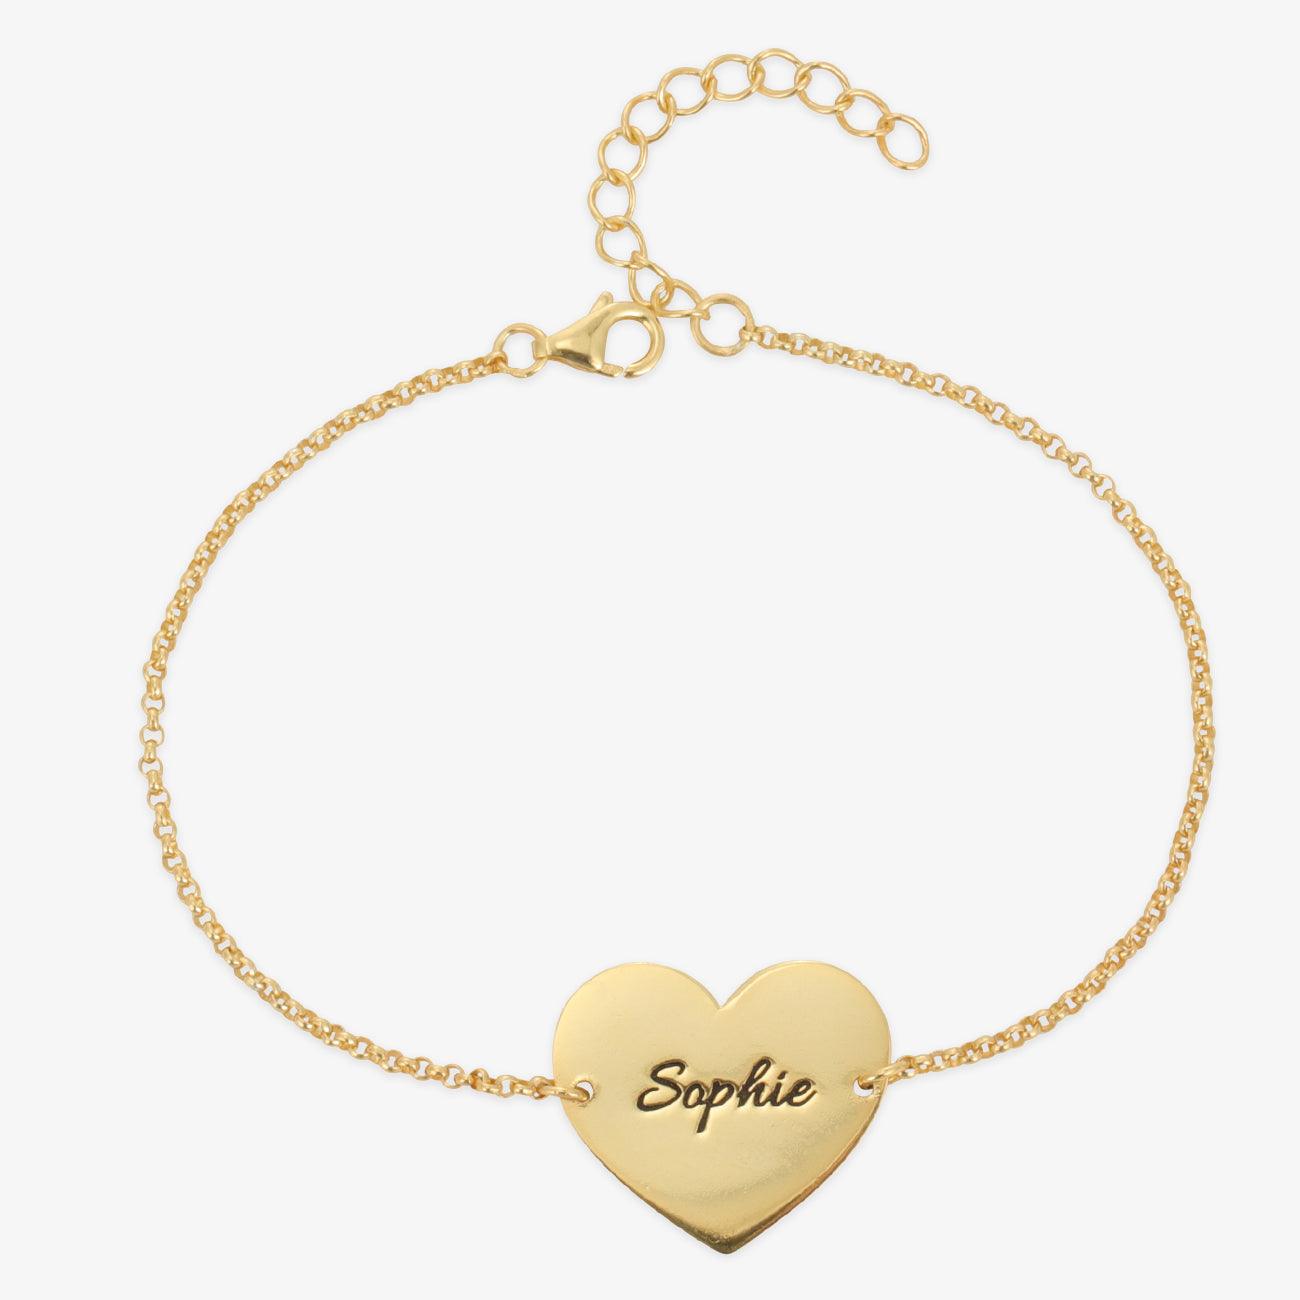 herzschmuck Bracelets Personalized Heart Pendant Bracelet in Sterling Silver